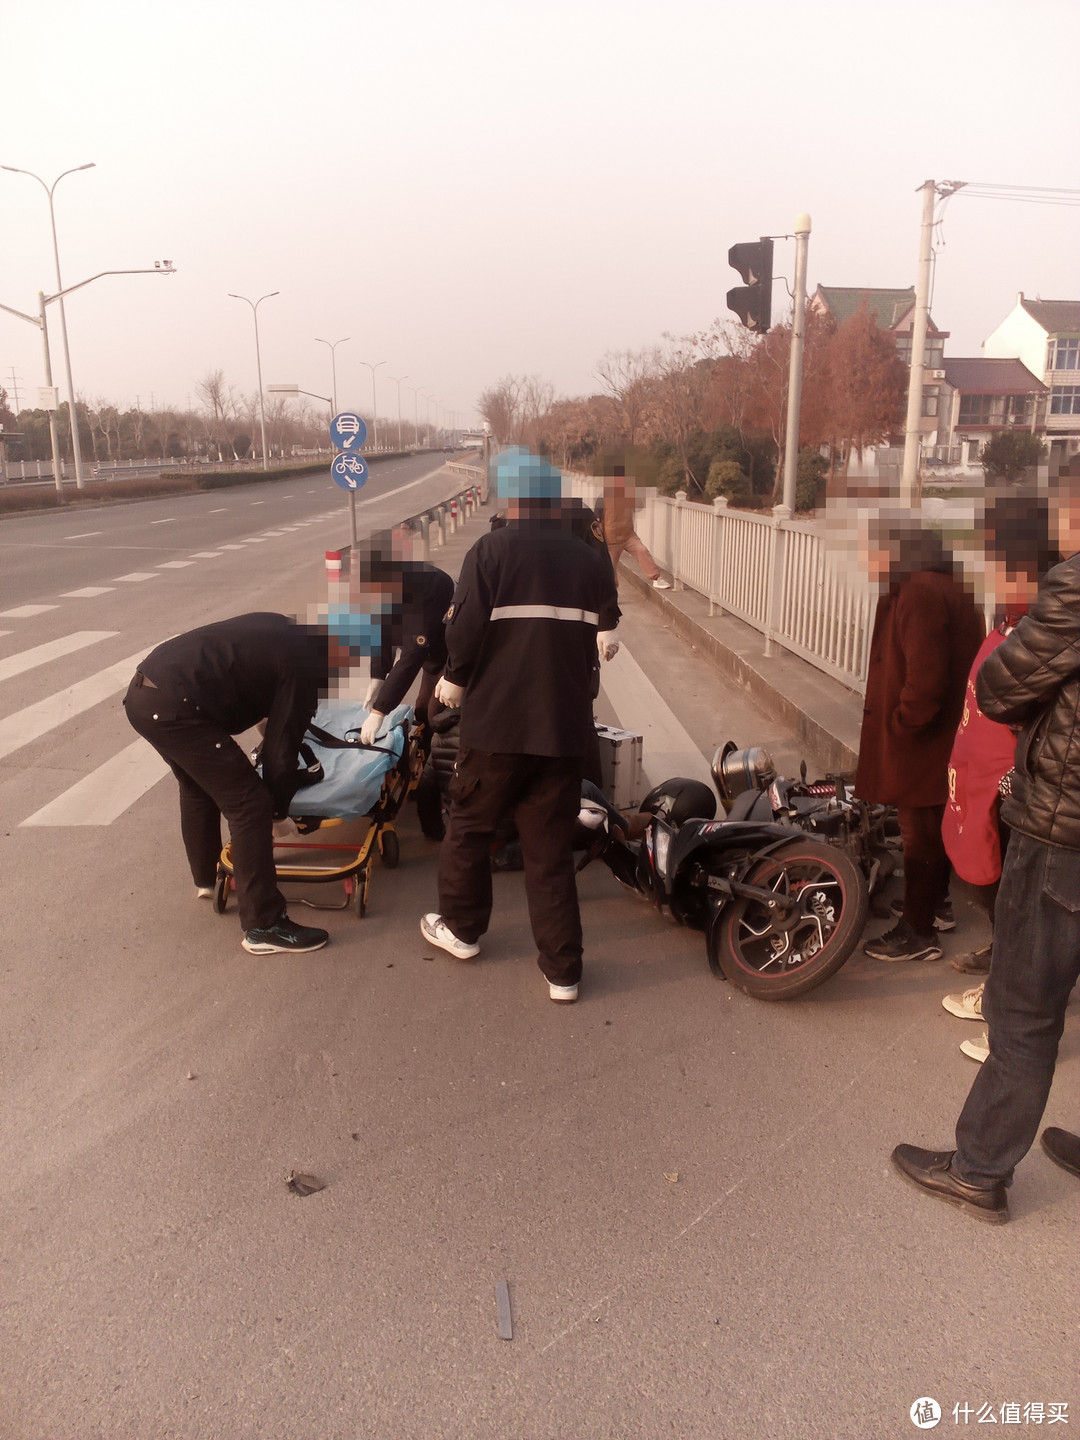 中国永远不缺围观群众，据当地村民说，这边老出车祸了，经常出事，连块事故多发的牌子都不竖